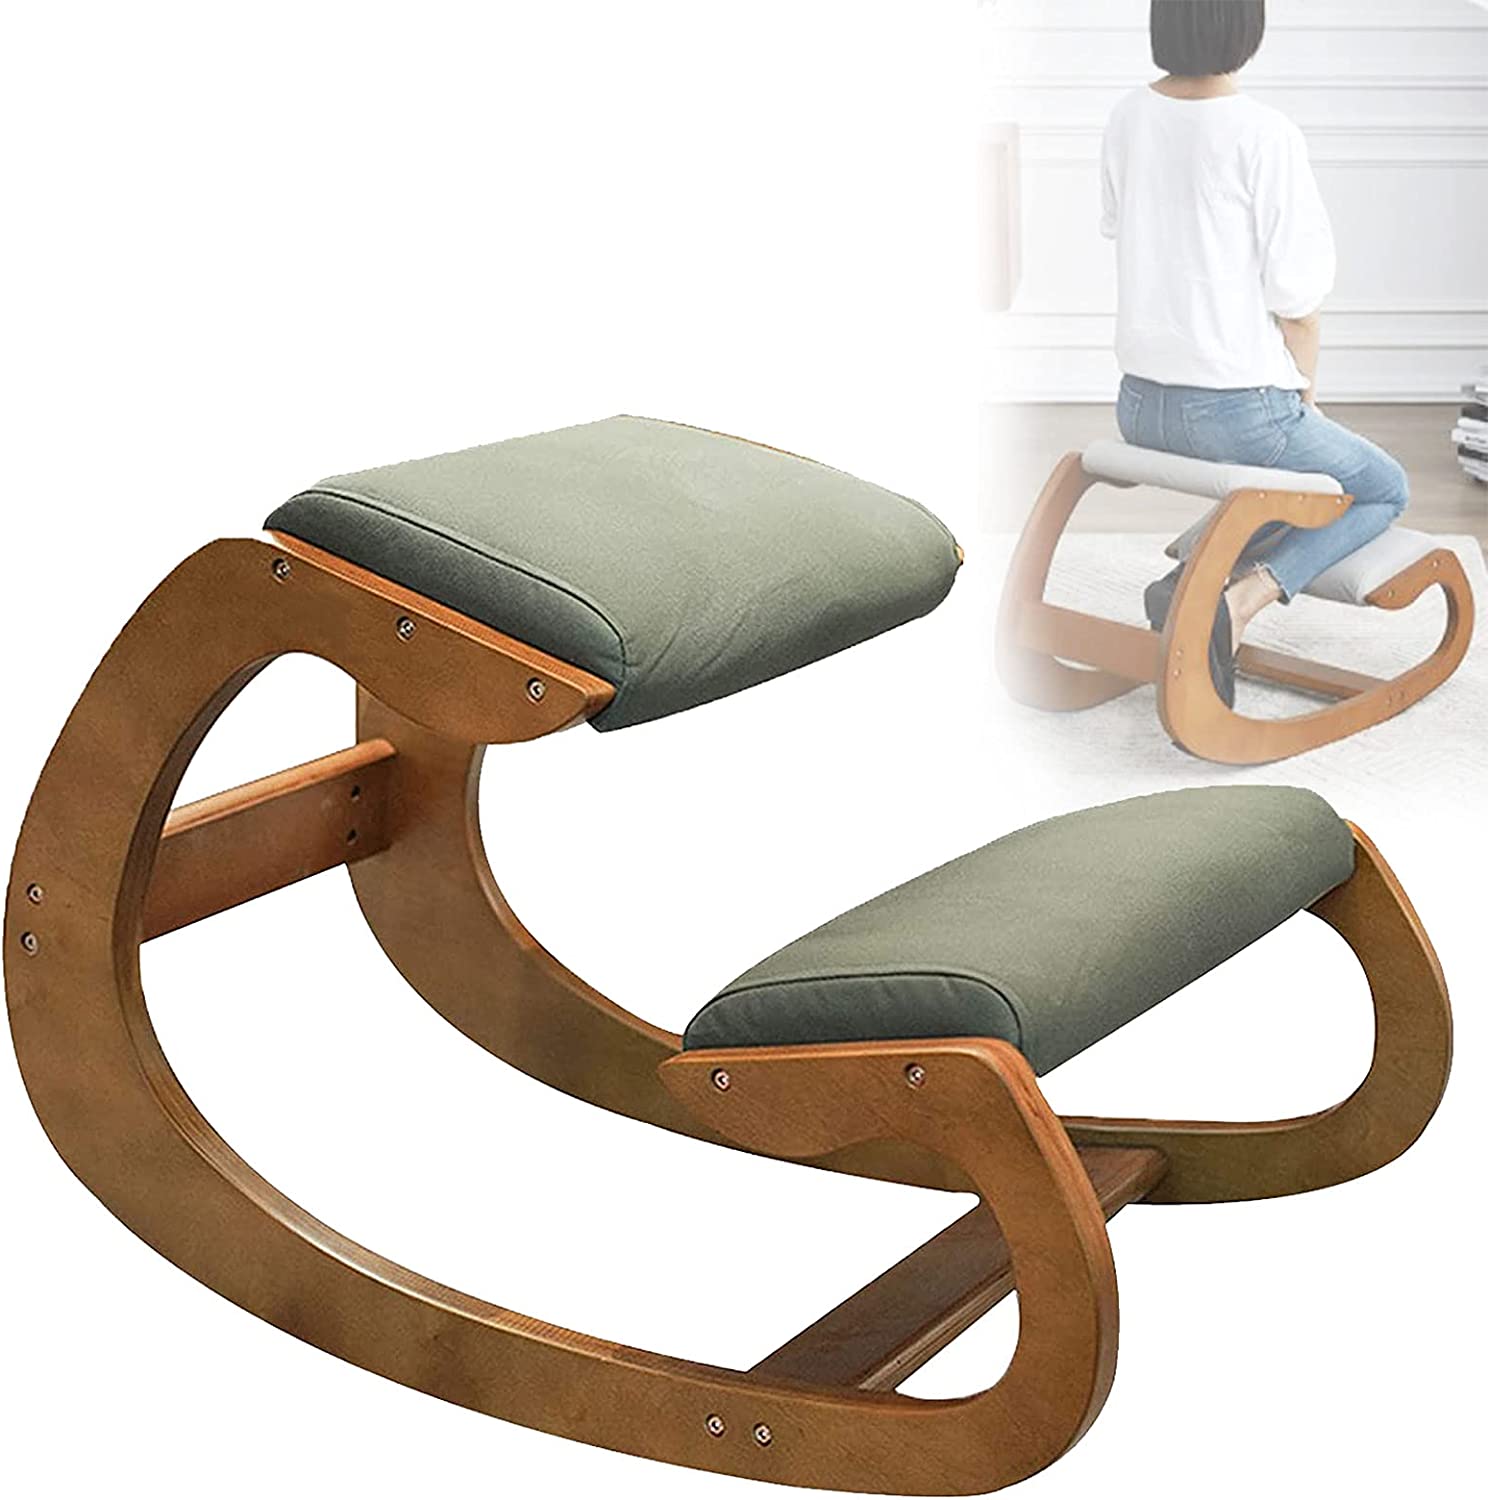 バランスチェア イージー 学習椅子 木製 骨盤サポートチェア 座椅子 腰痛 オフィスチェアー 高齢者子供女性男性 向けニーリングチェア姿勢補正